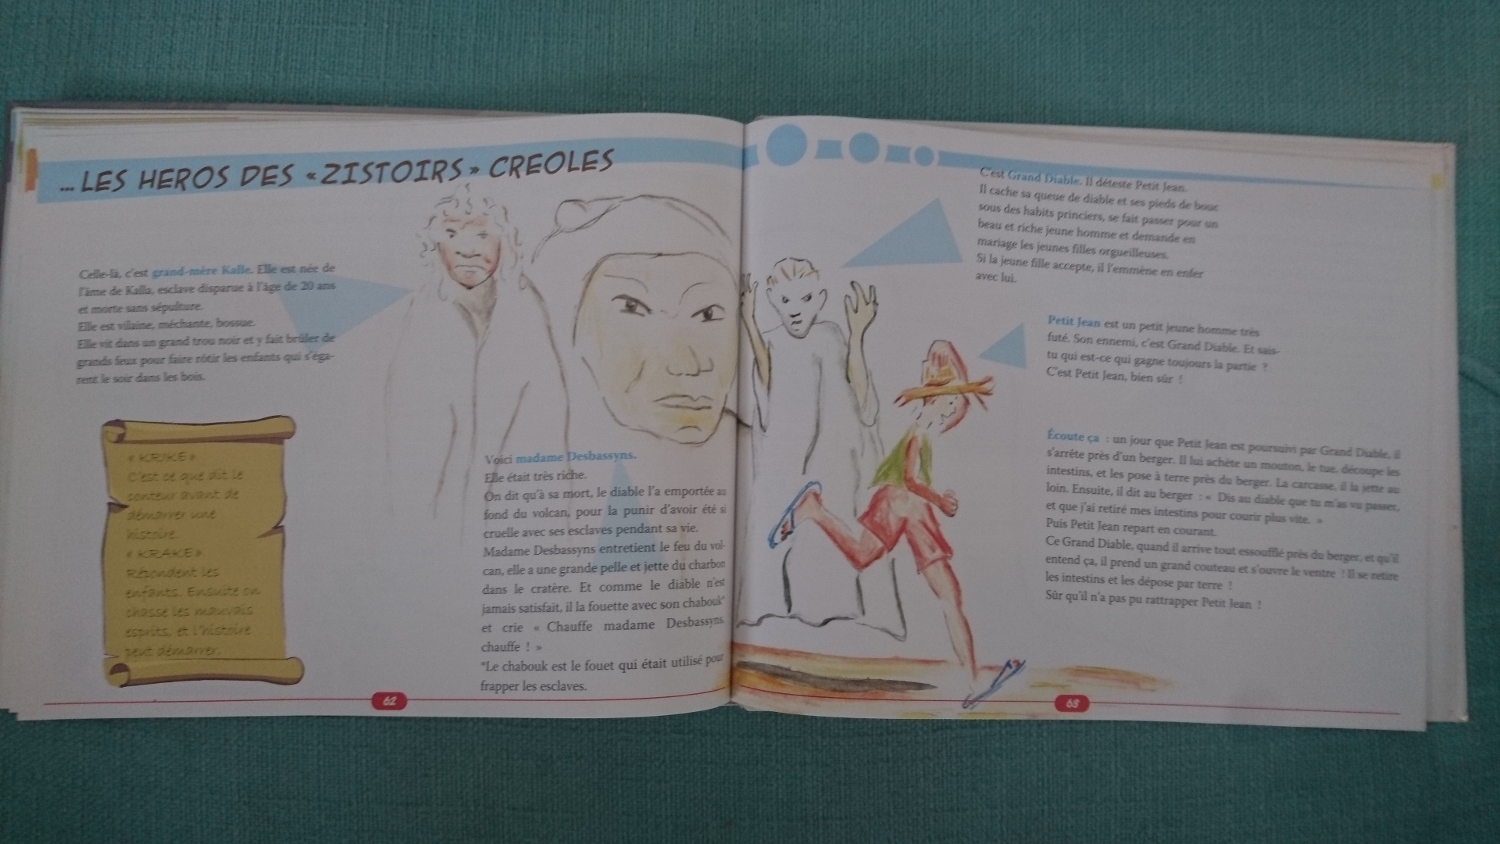 Les héros des « zistoires » créoles expliqués dans Le Guide Marmaille de la Réunion, aux éditions Orphie.